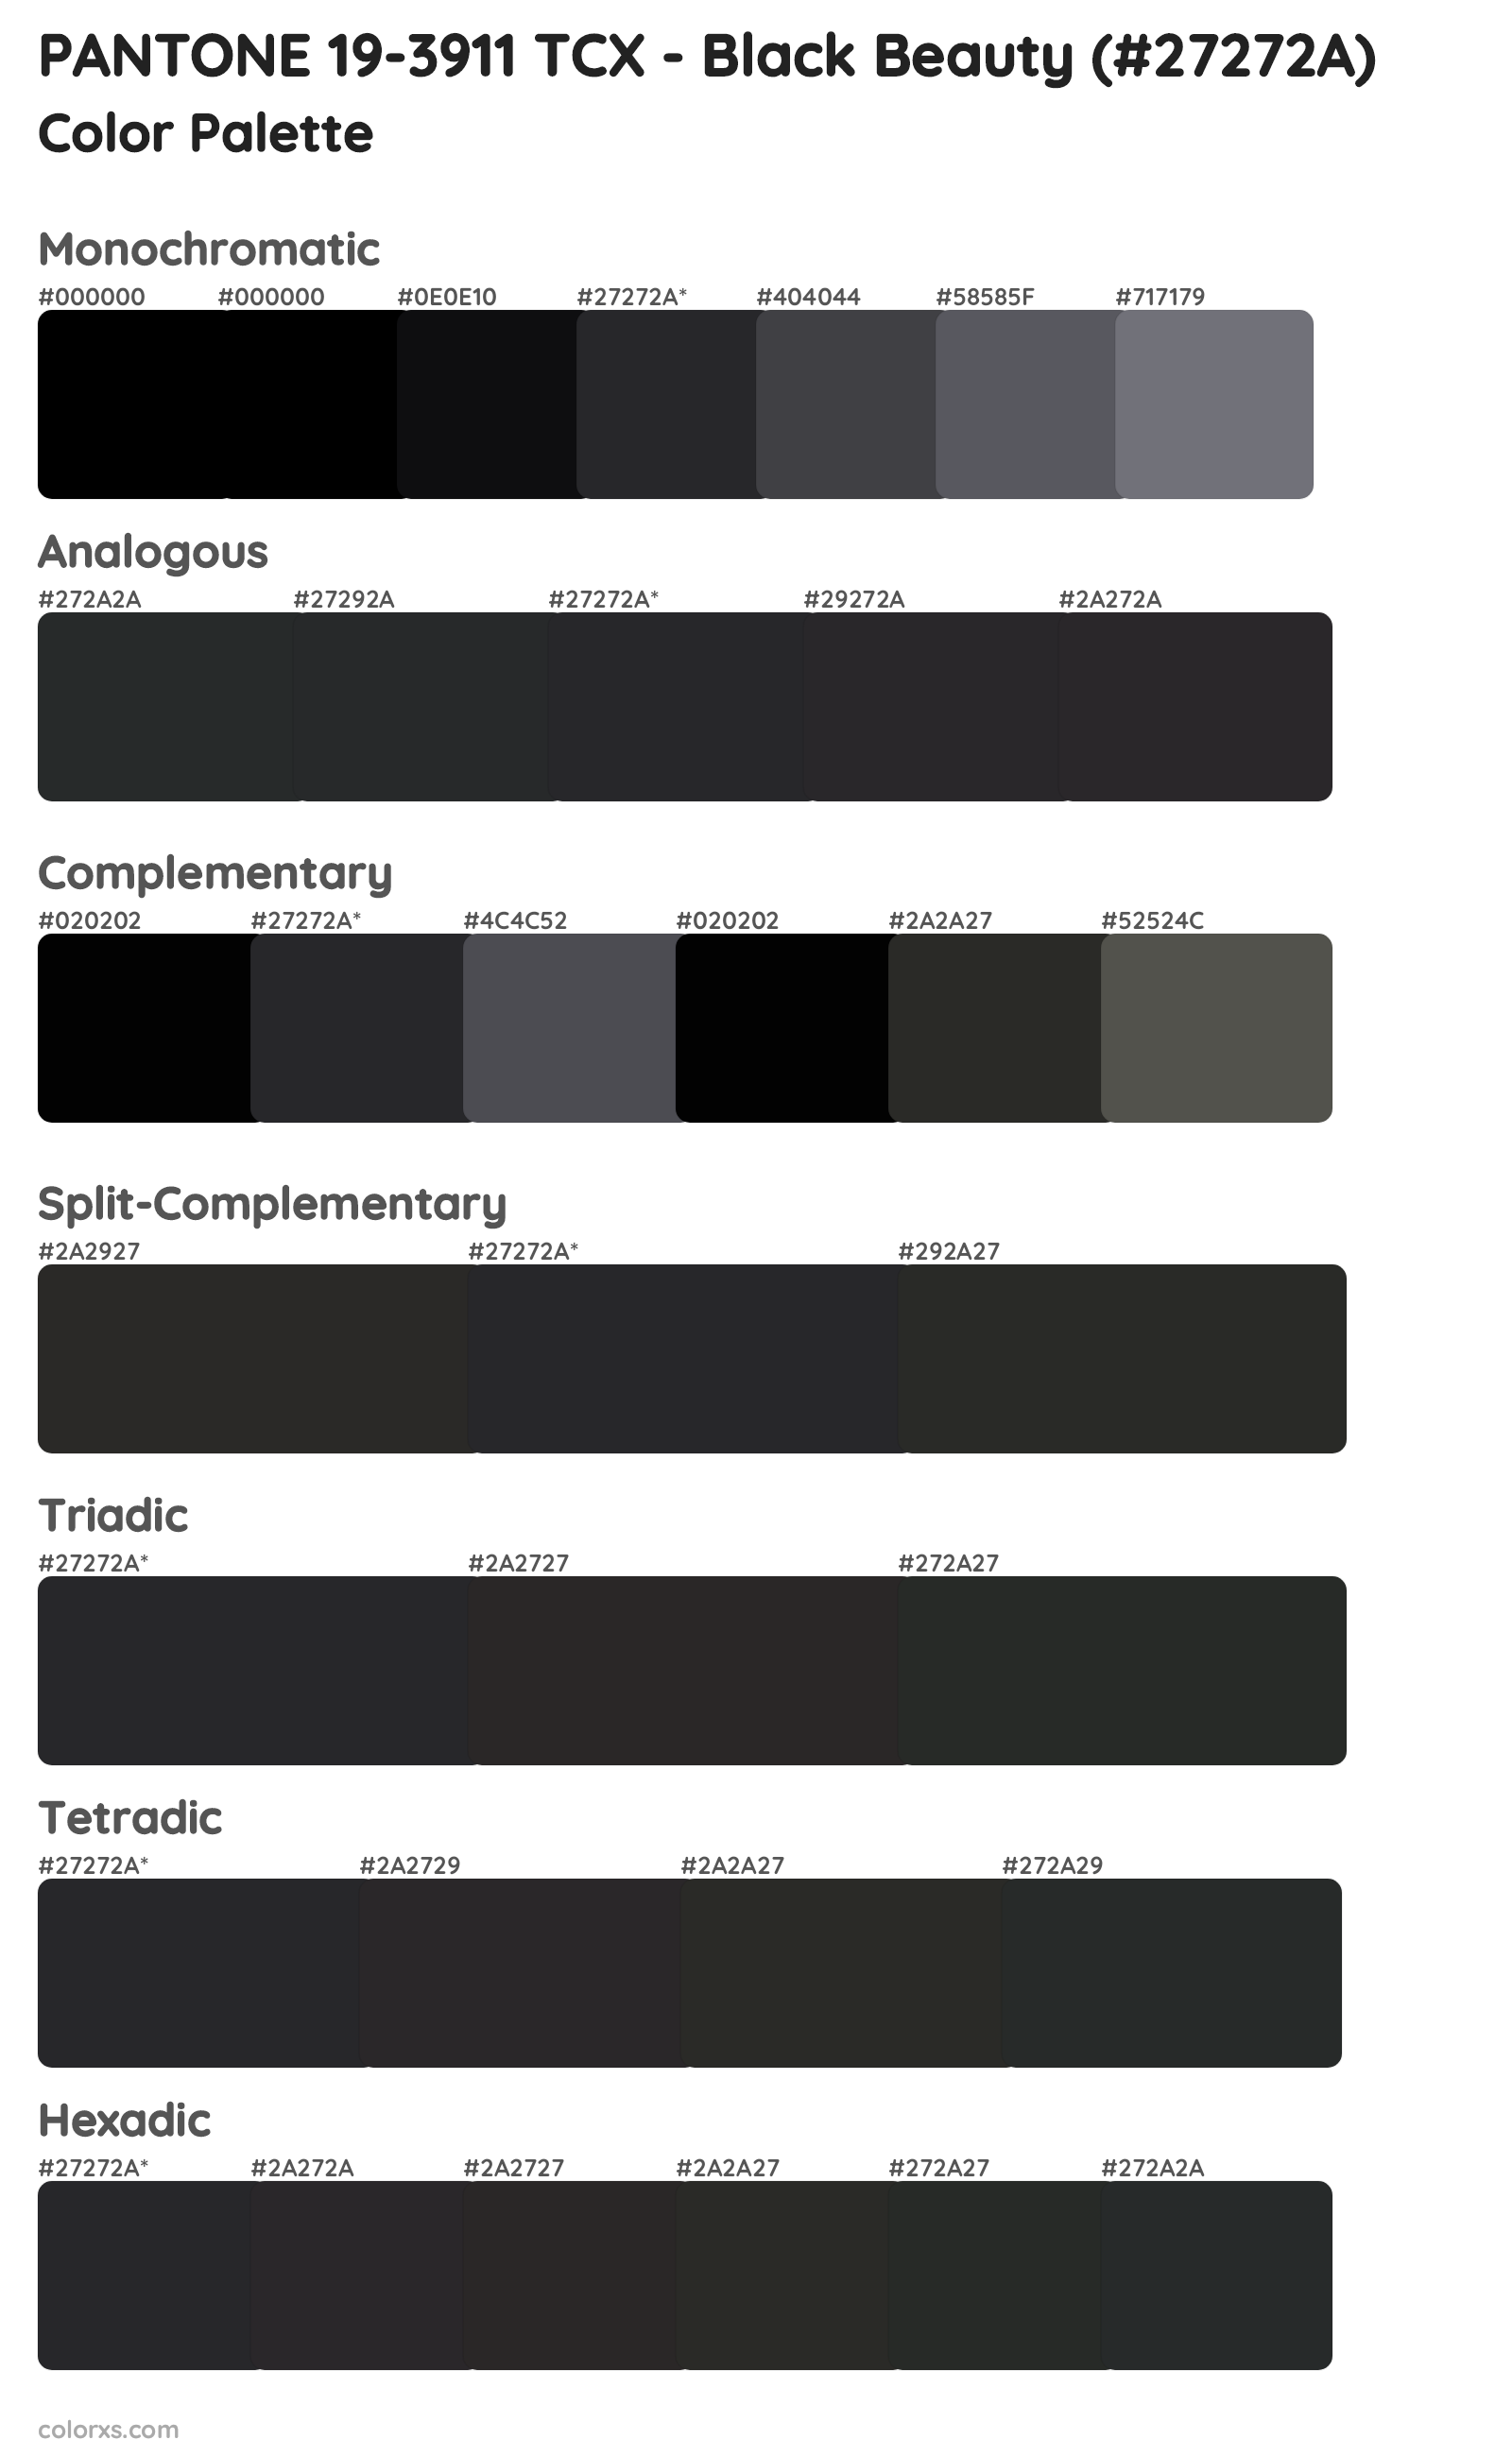 PANTONE 19-3911 TCX - Black Beauty Color Scheme Palettes